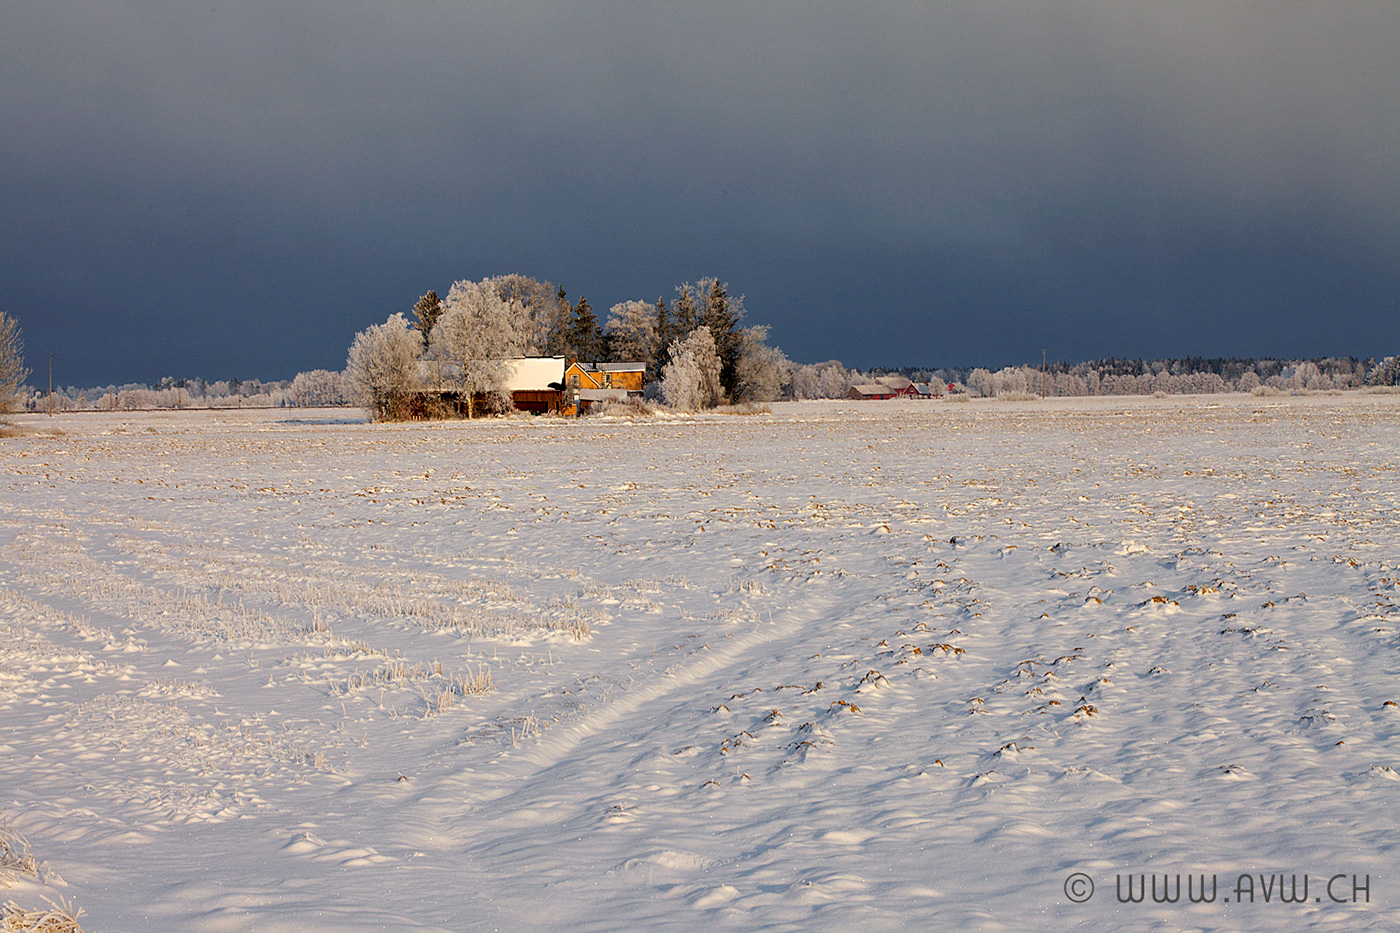 Travel photo REISEN värmland schweden Nature Landscape natur Landschaft winter